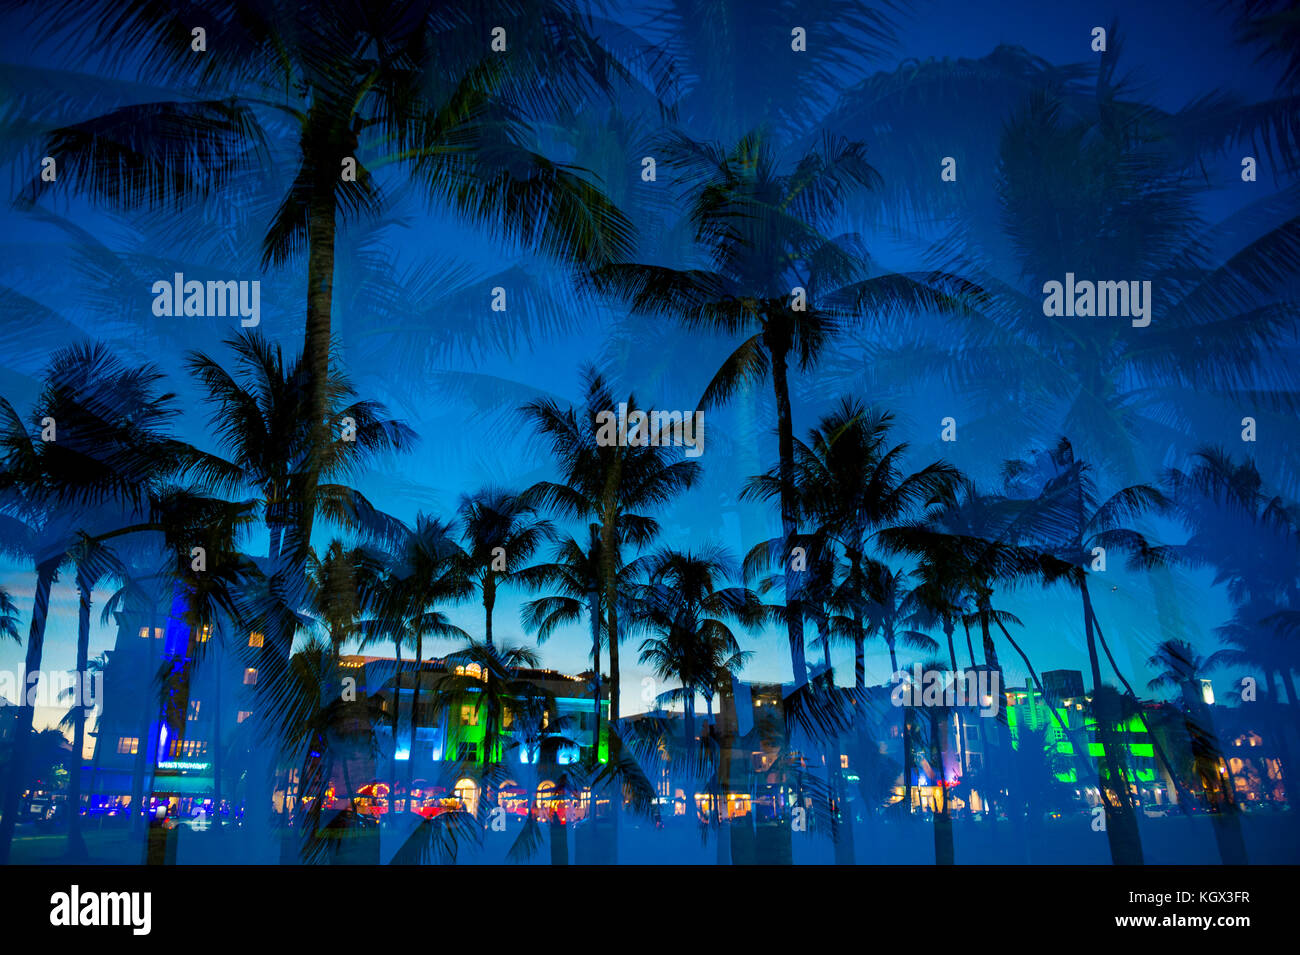 Vue d'exposition multiple au crépuscule de palmiers et de néons d'Ocean Drive à South Beach, Miami, Floride. Banque D'Images